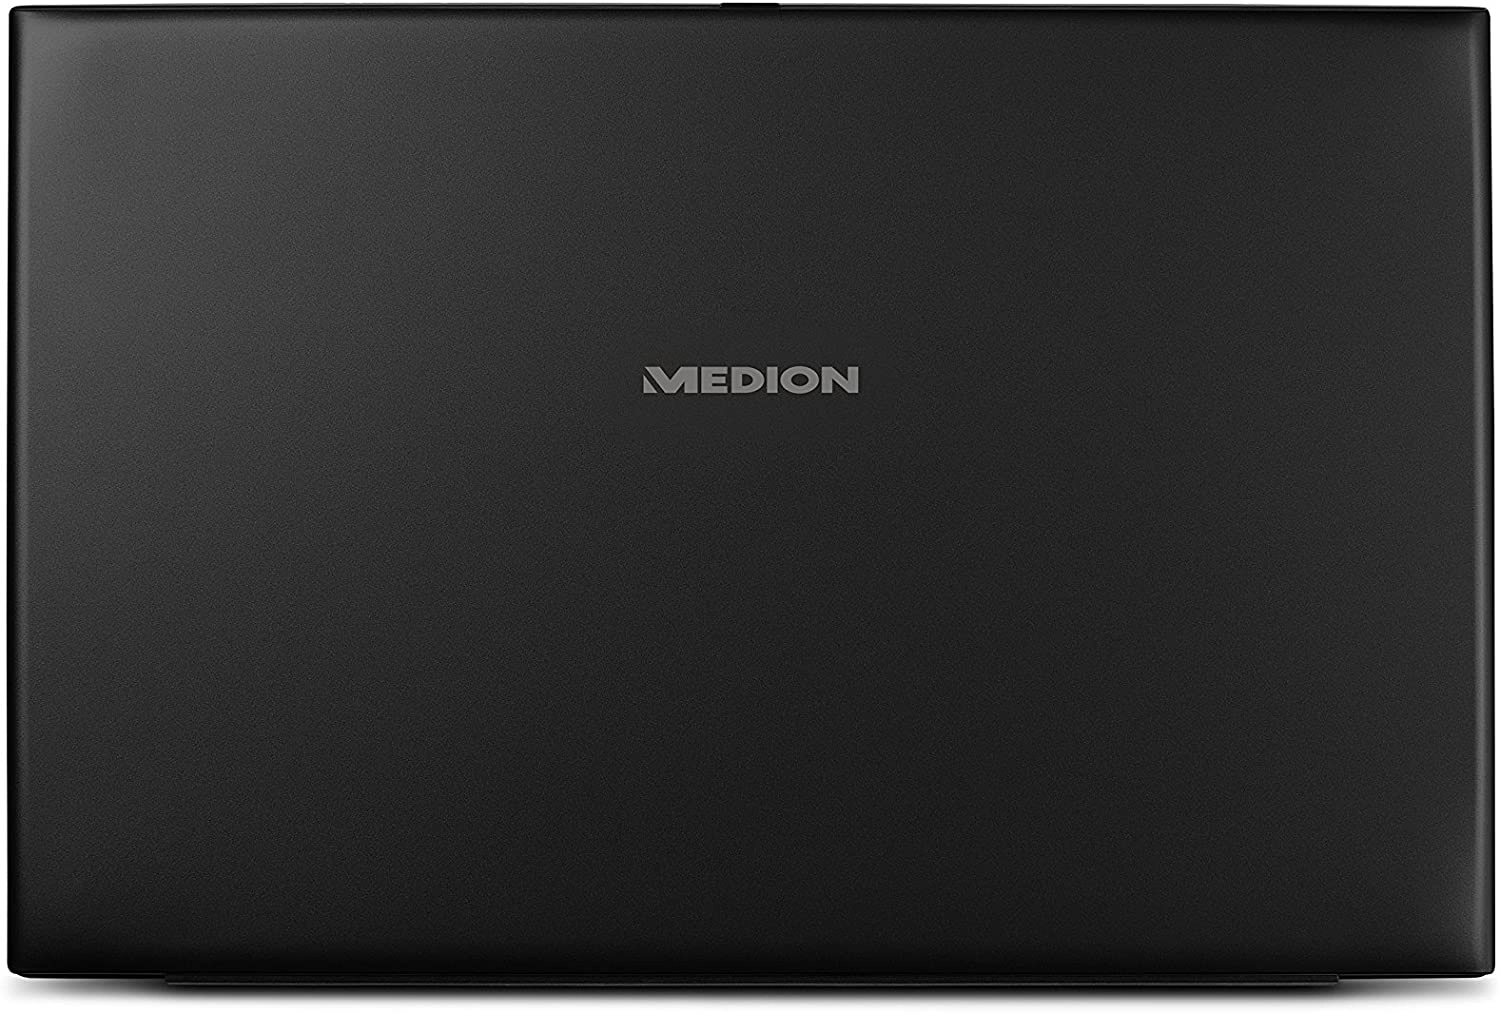 Medion S6421 - MD 61010 laptop image